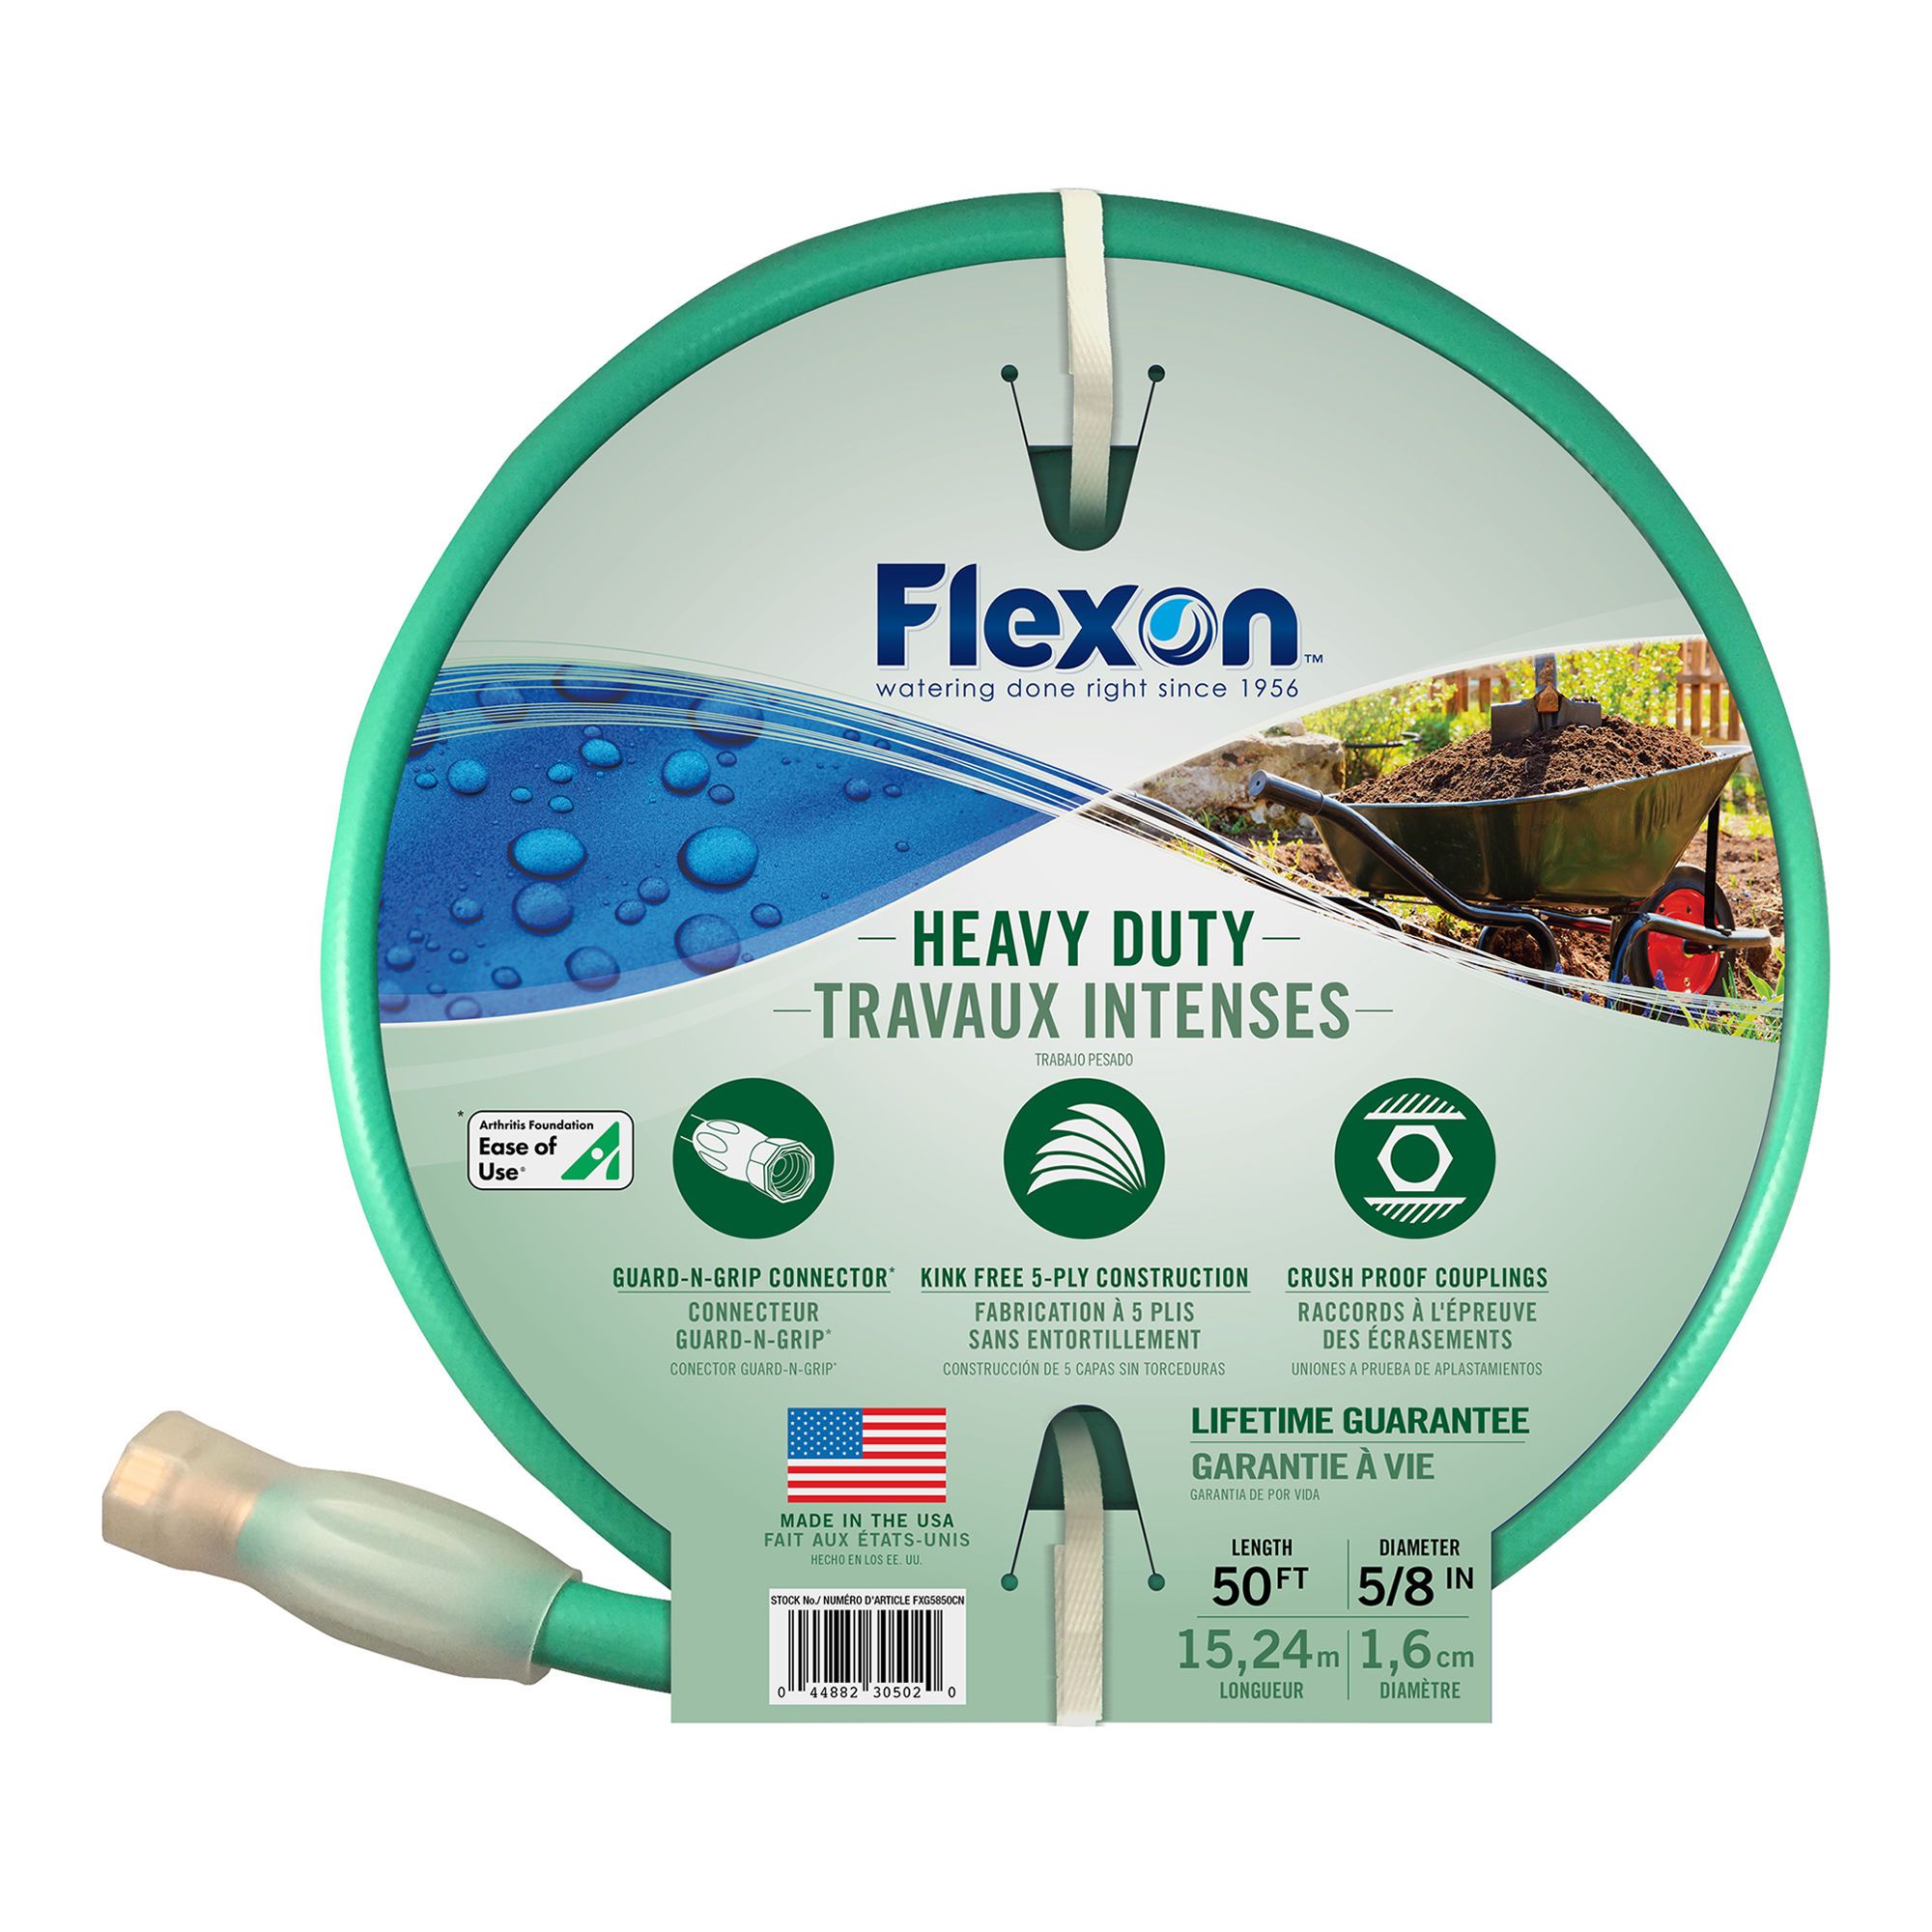 Heavy Duty Forever hose from FLEXON